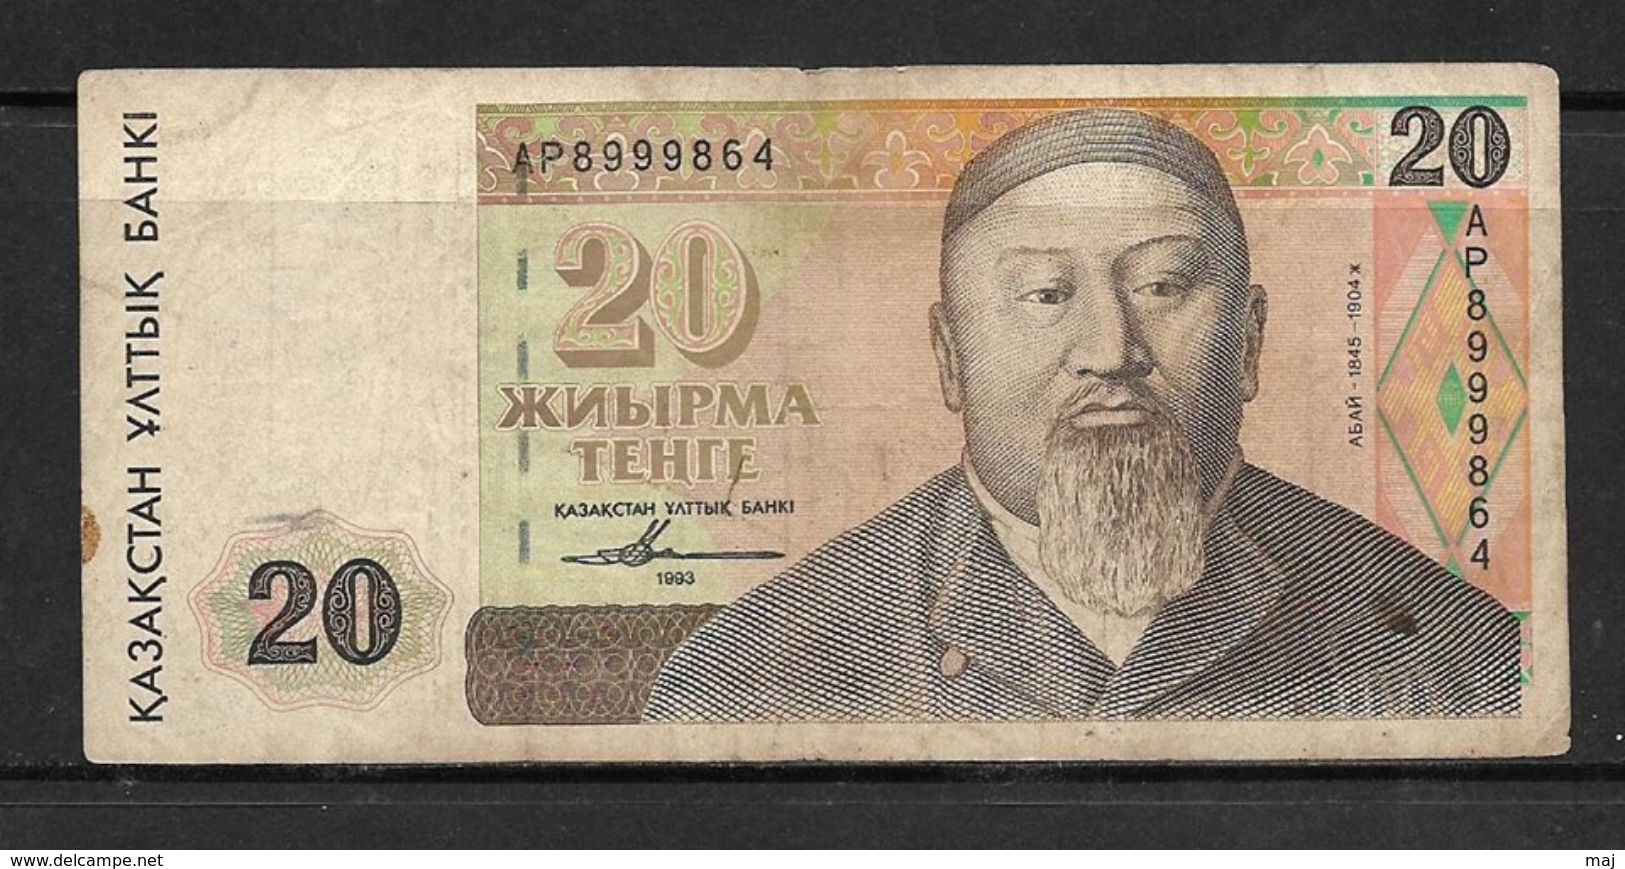 Kazakhstan 1993 20 Tenge Note, As Per Scan Condition - Kazakhstan